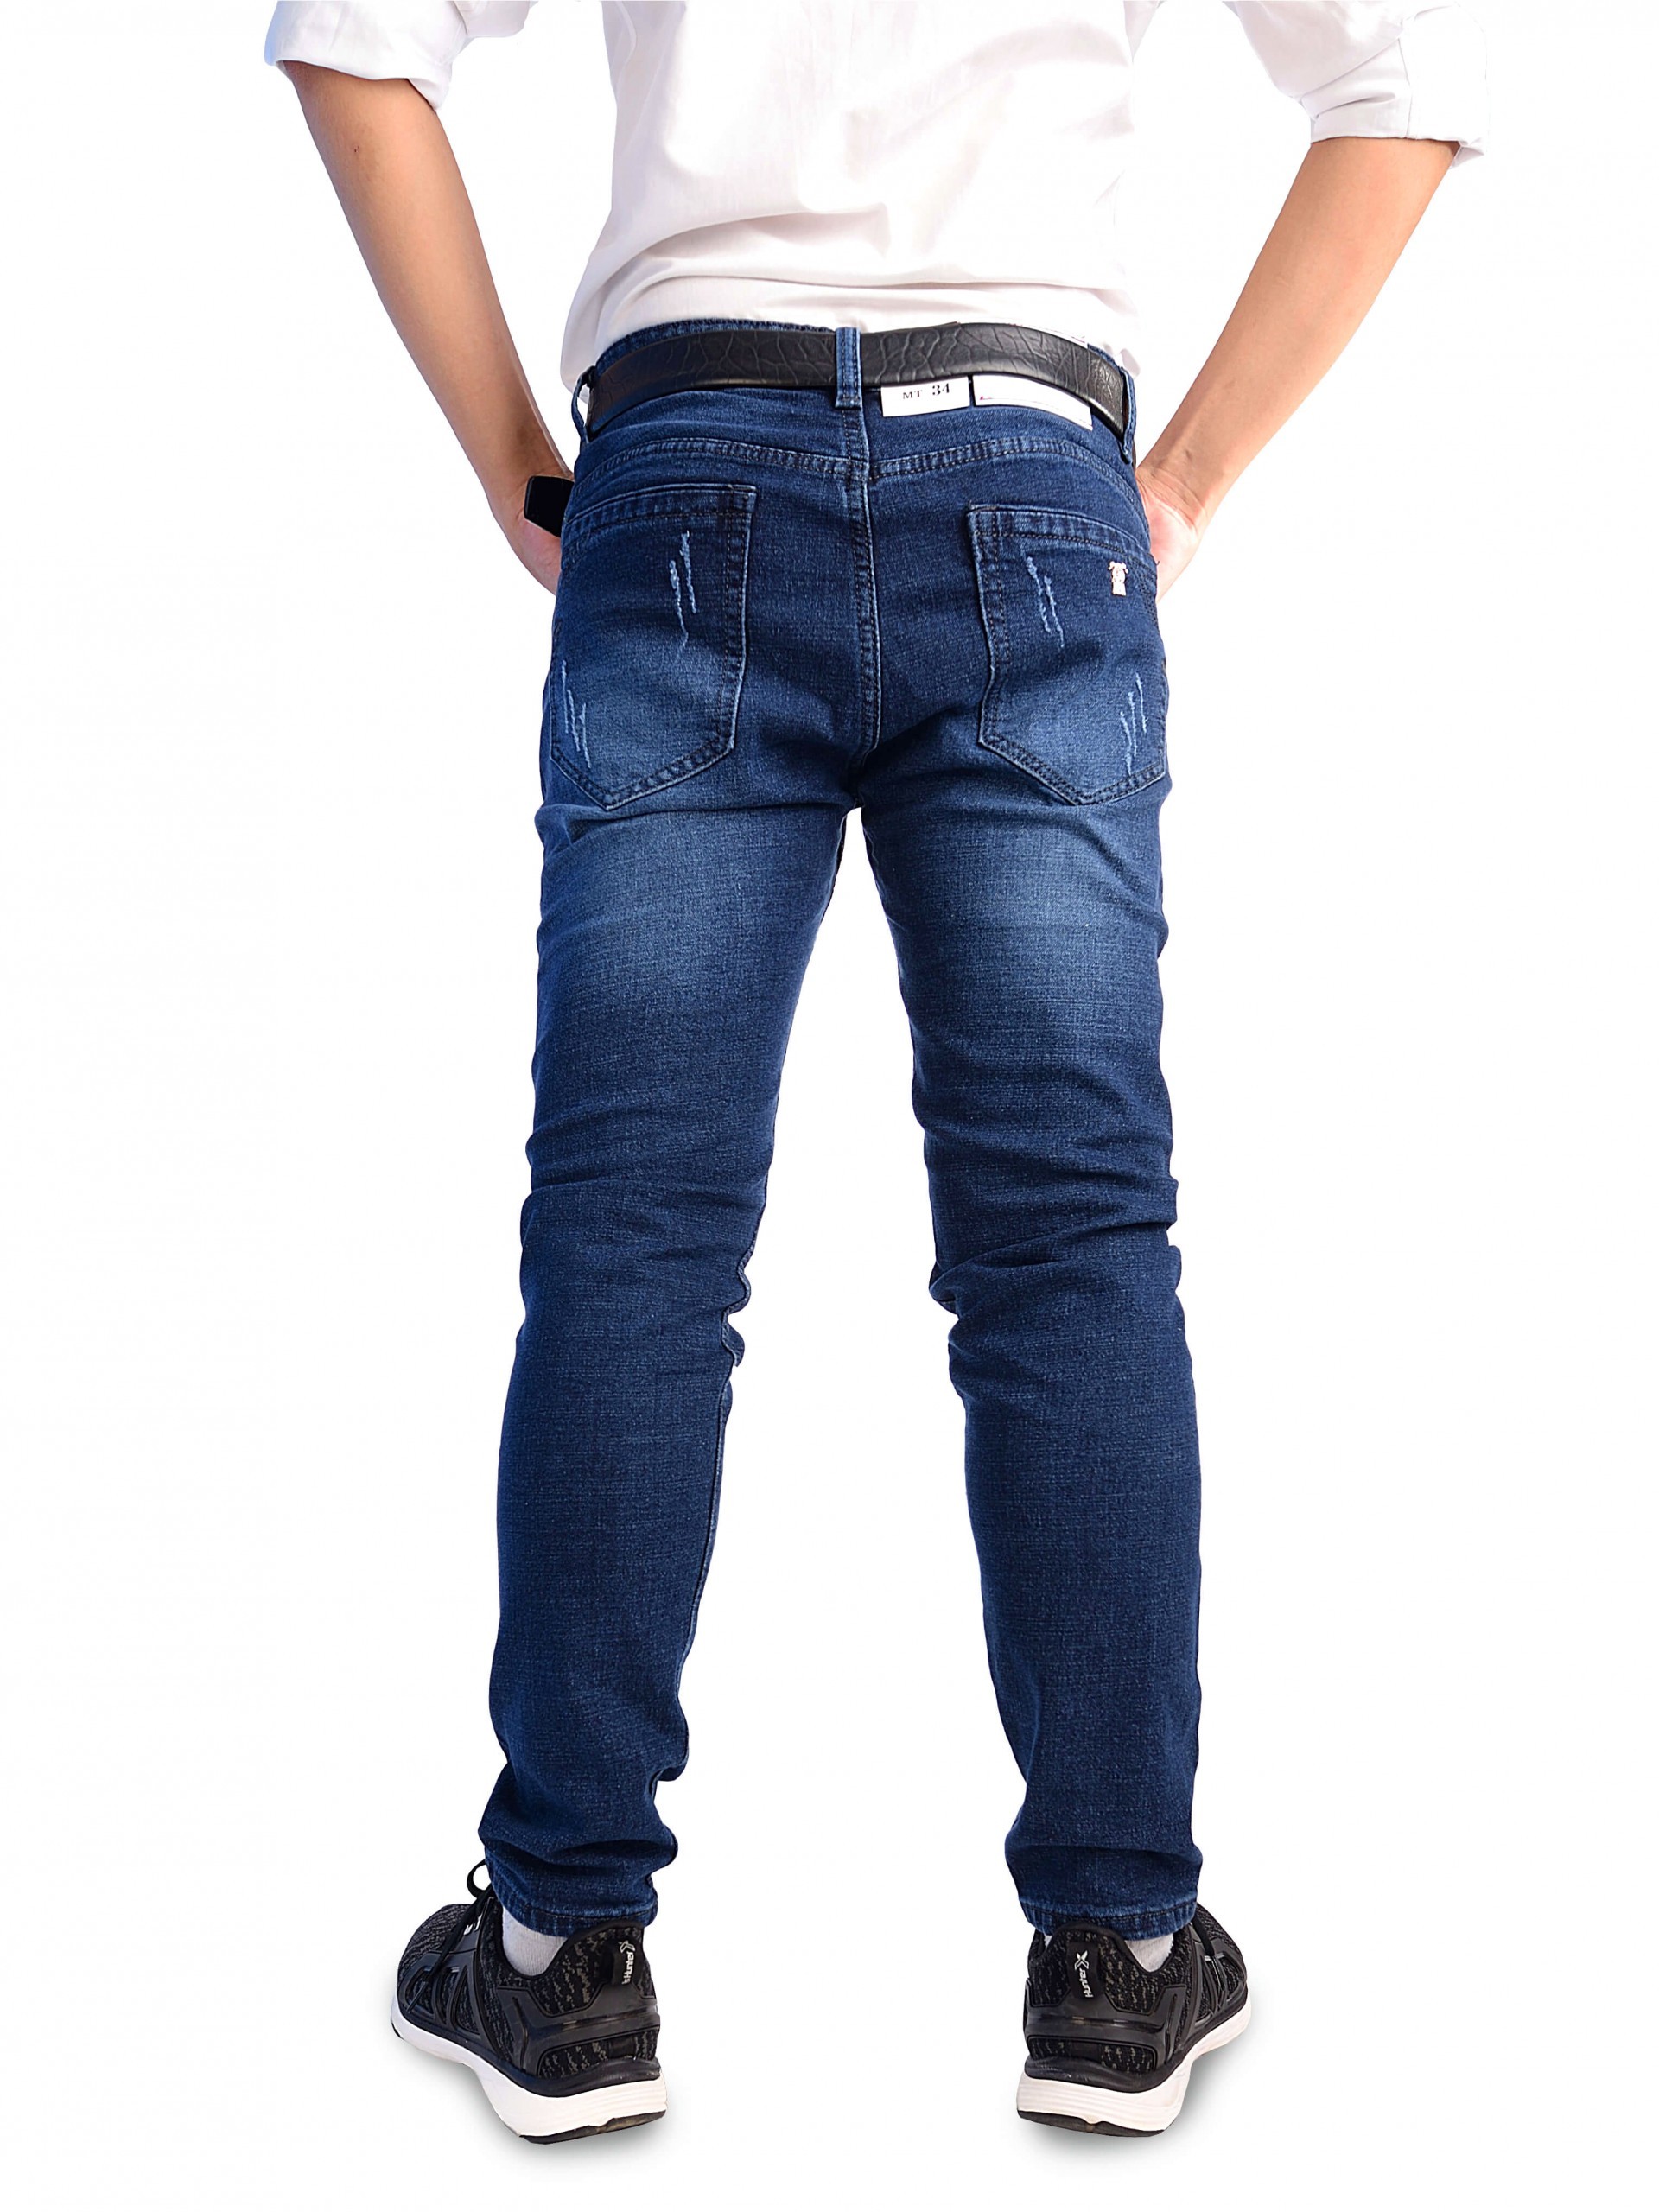 Phong cách thời trang trẻ trung với quần jeans nam xước